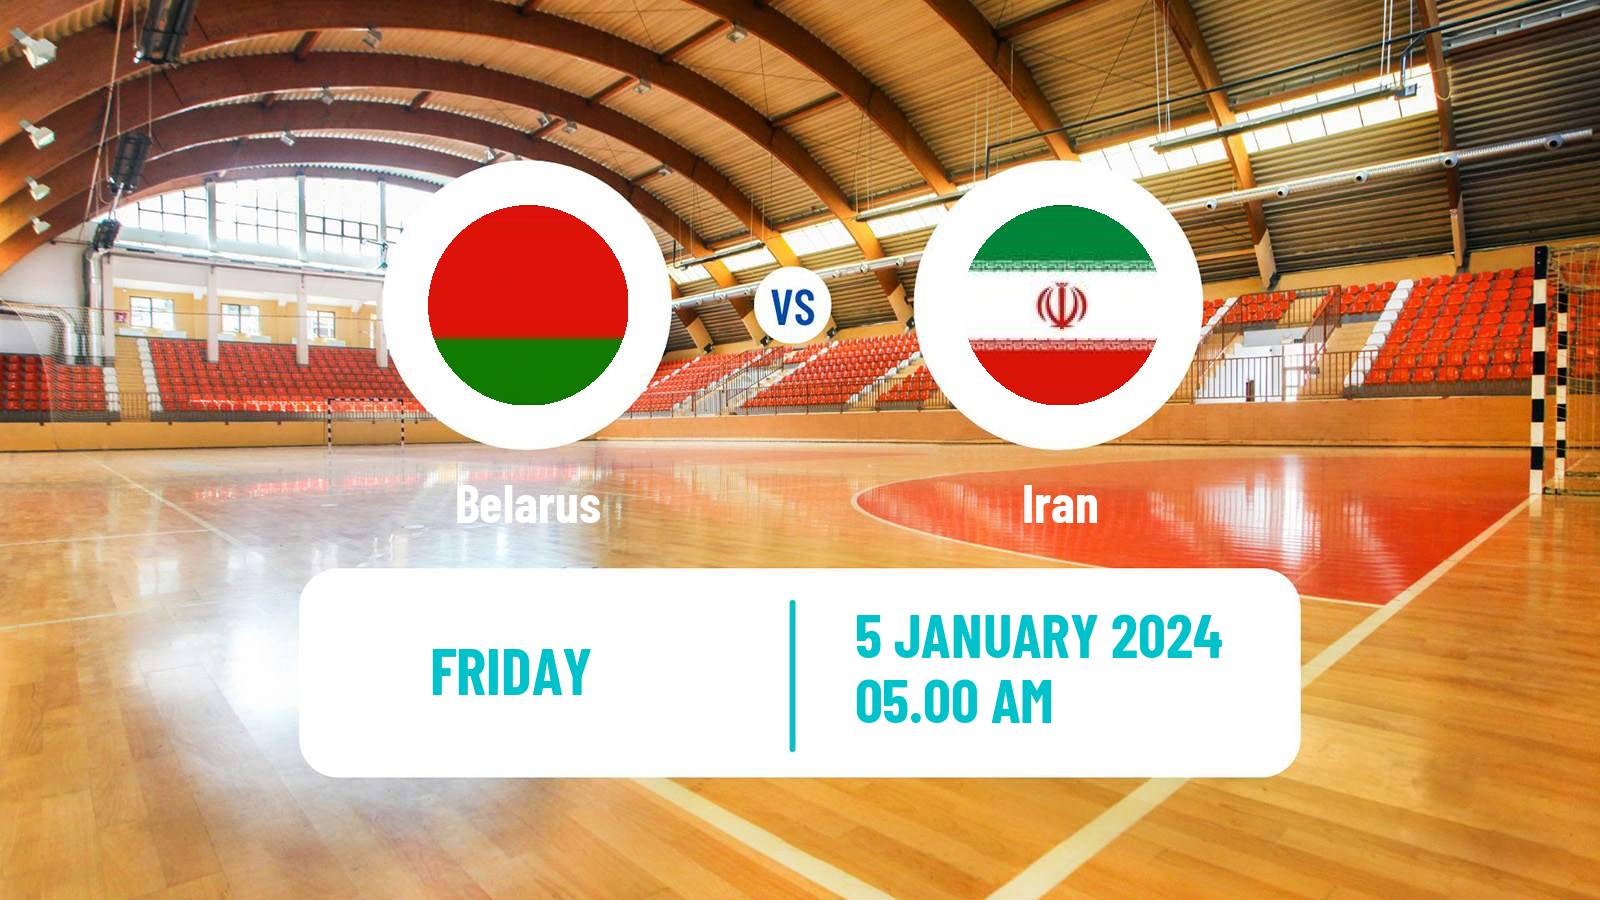 Handball Friendly International Handball Belarus - Iran